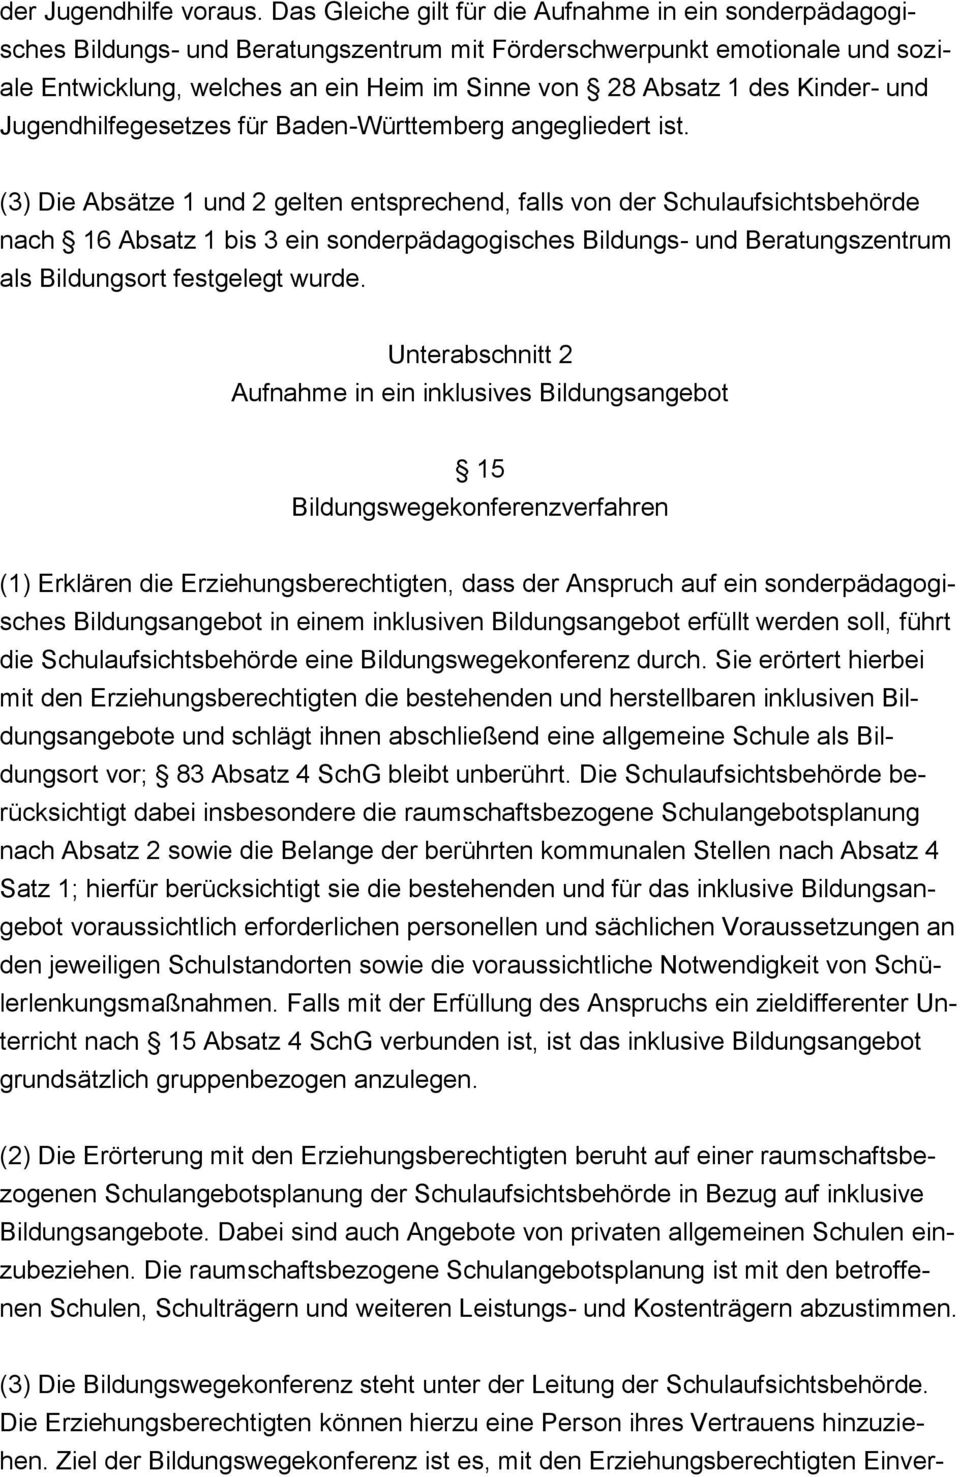 Kinder- und Jugendhilfegesetzes für Baden-Württemberg angegliedert ist.